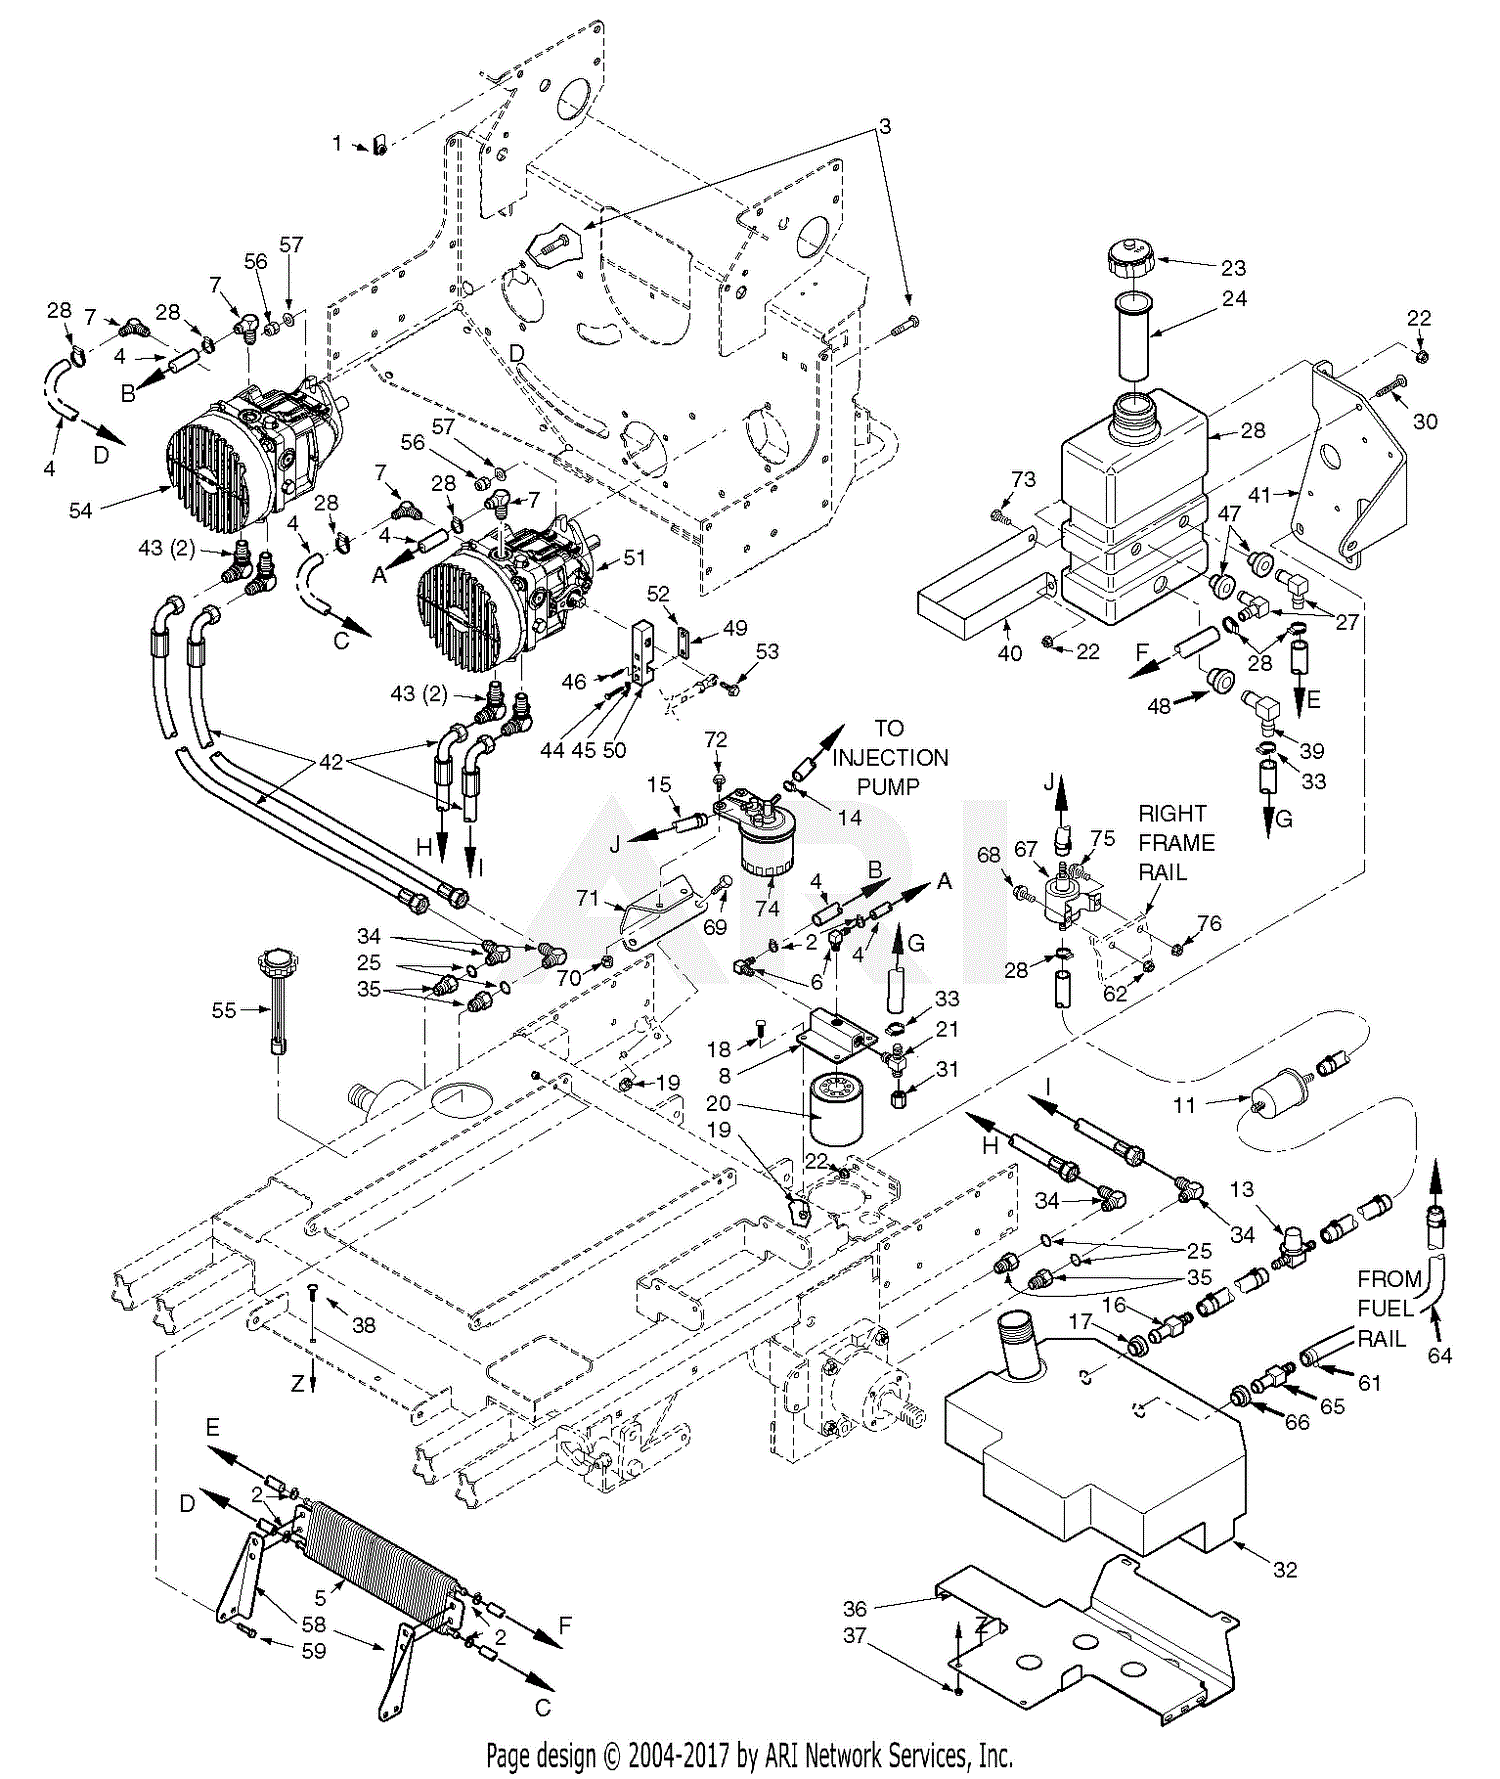 Wiring Diagram: 28 Kubota Hydraulic Cylinder Diagram